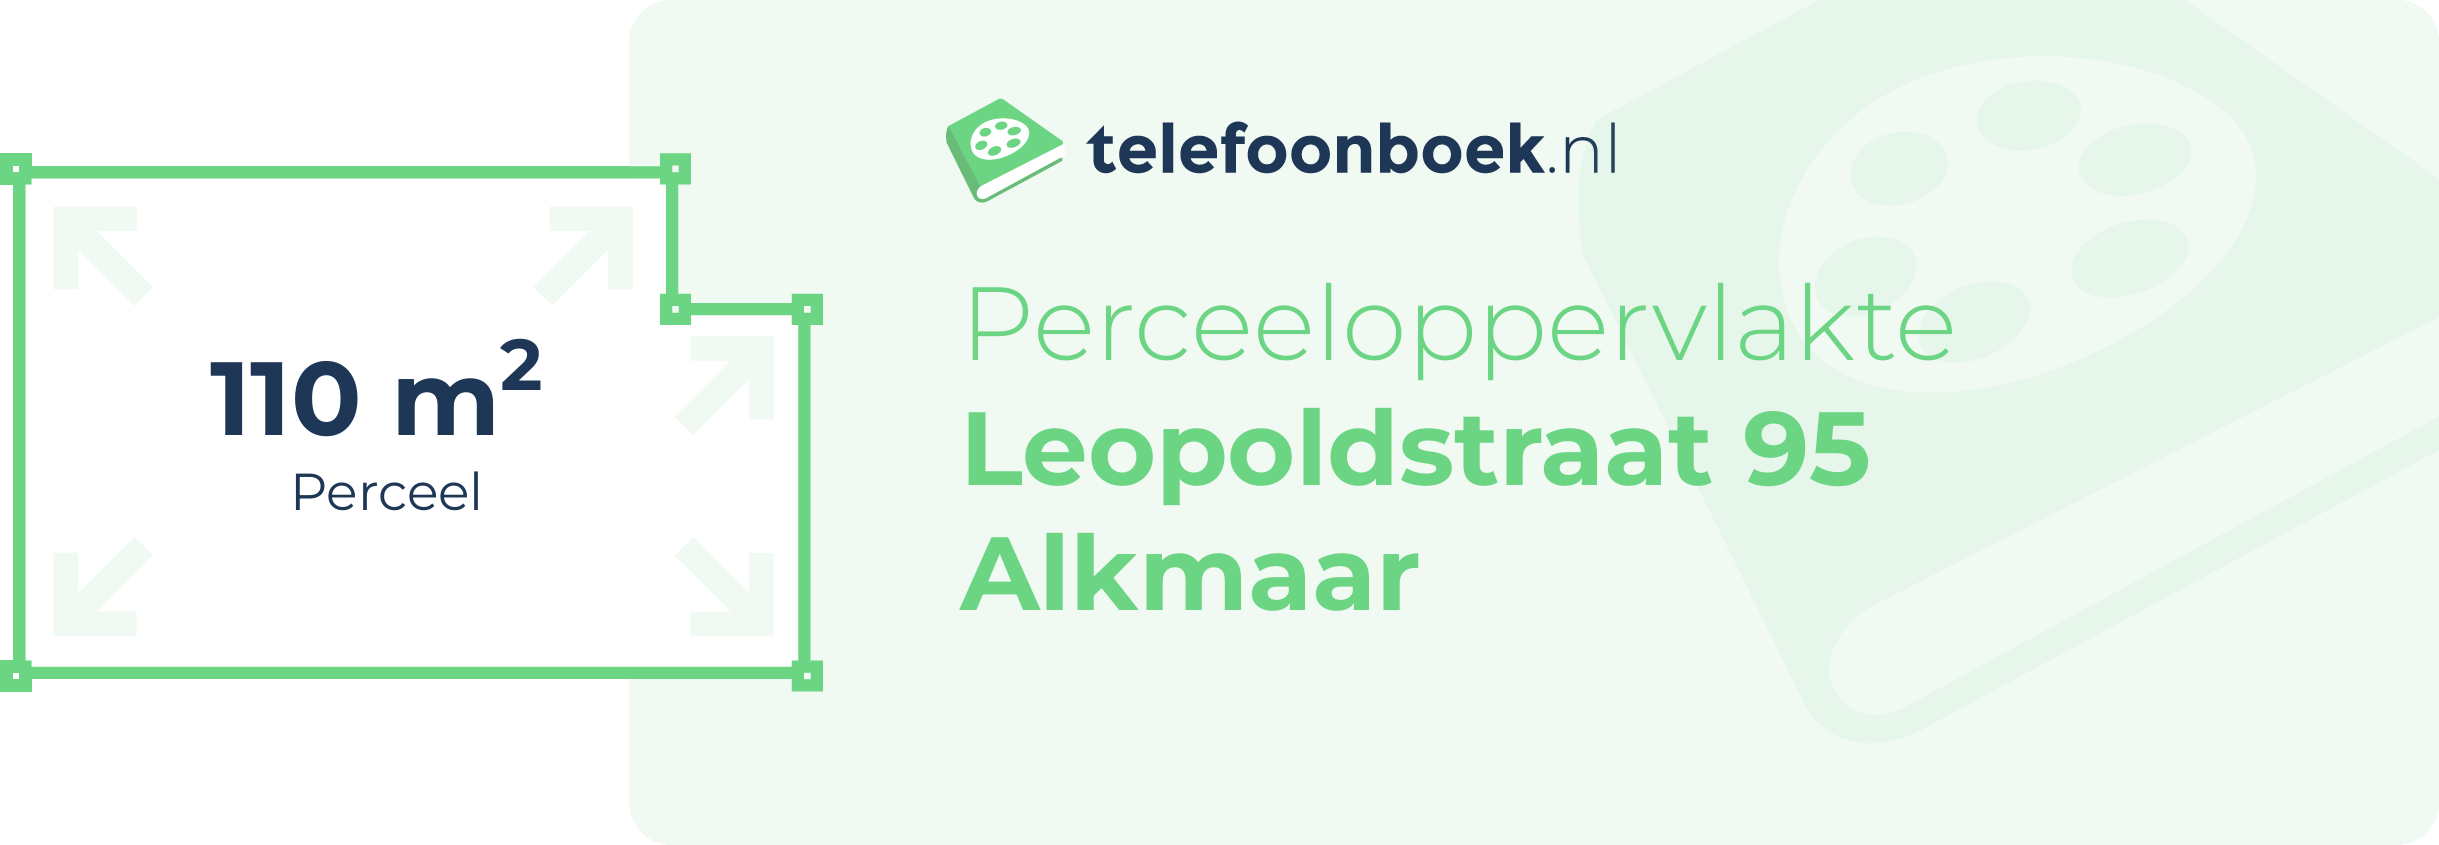 Perceeloppervlakte Leopoldstraat 95 Alkmaar